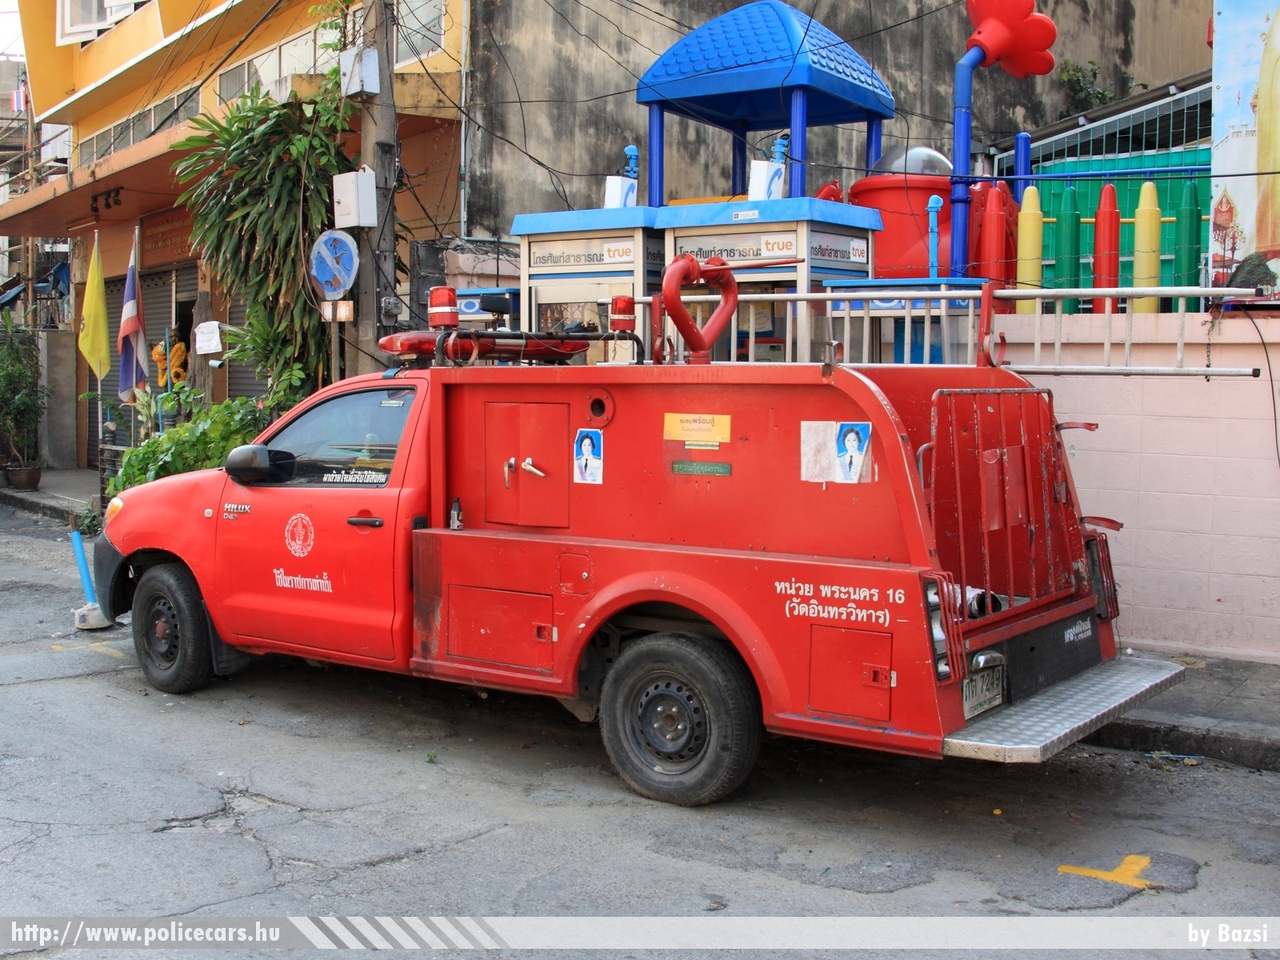 Toyota Hilux, fotó: Bazsi 
Keywords: thaiföld tûzoltóság fire dept 